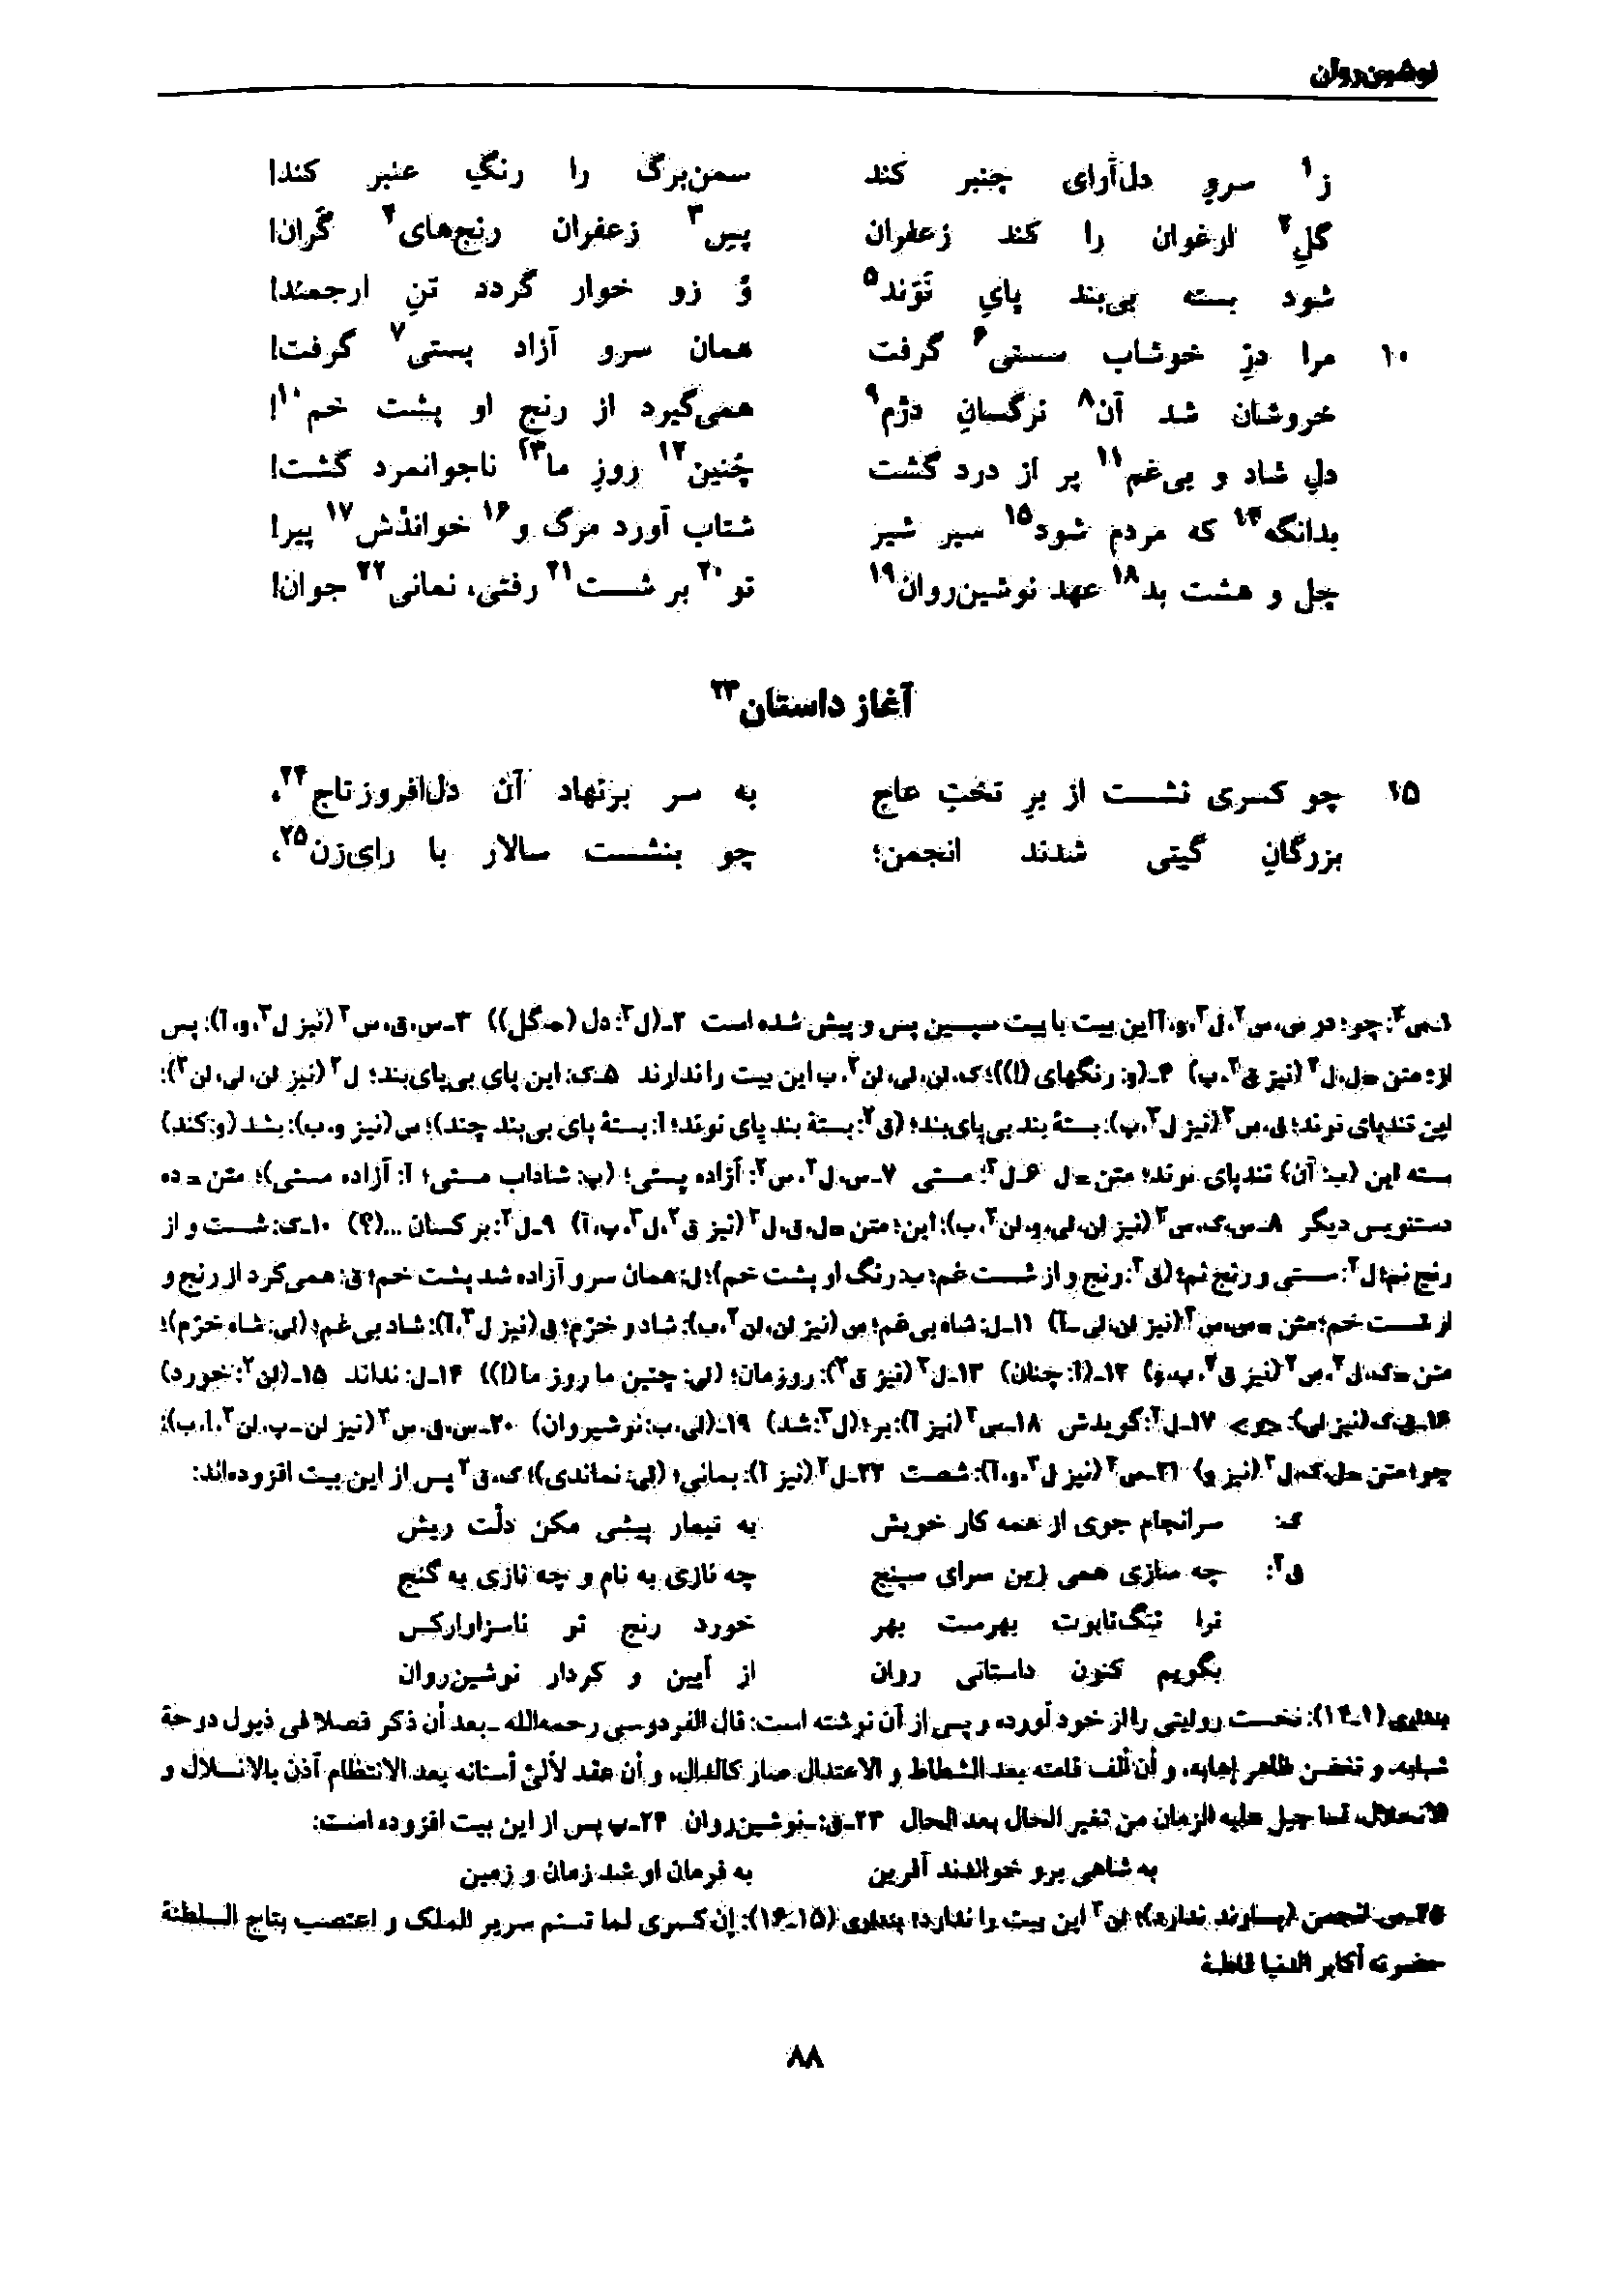 vol. 7, p. 88